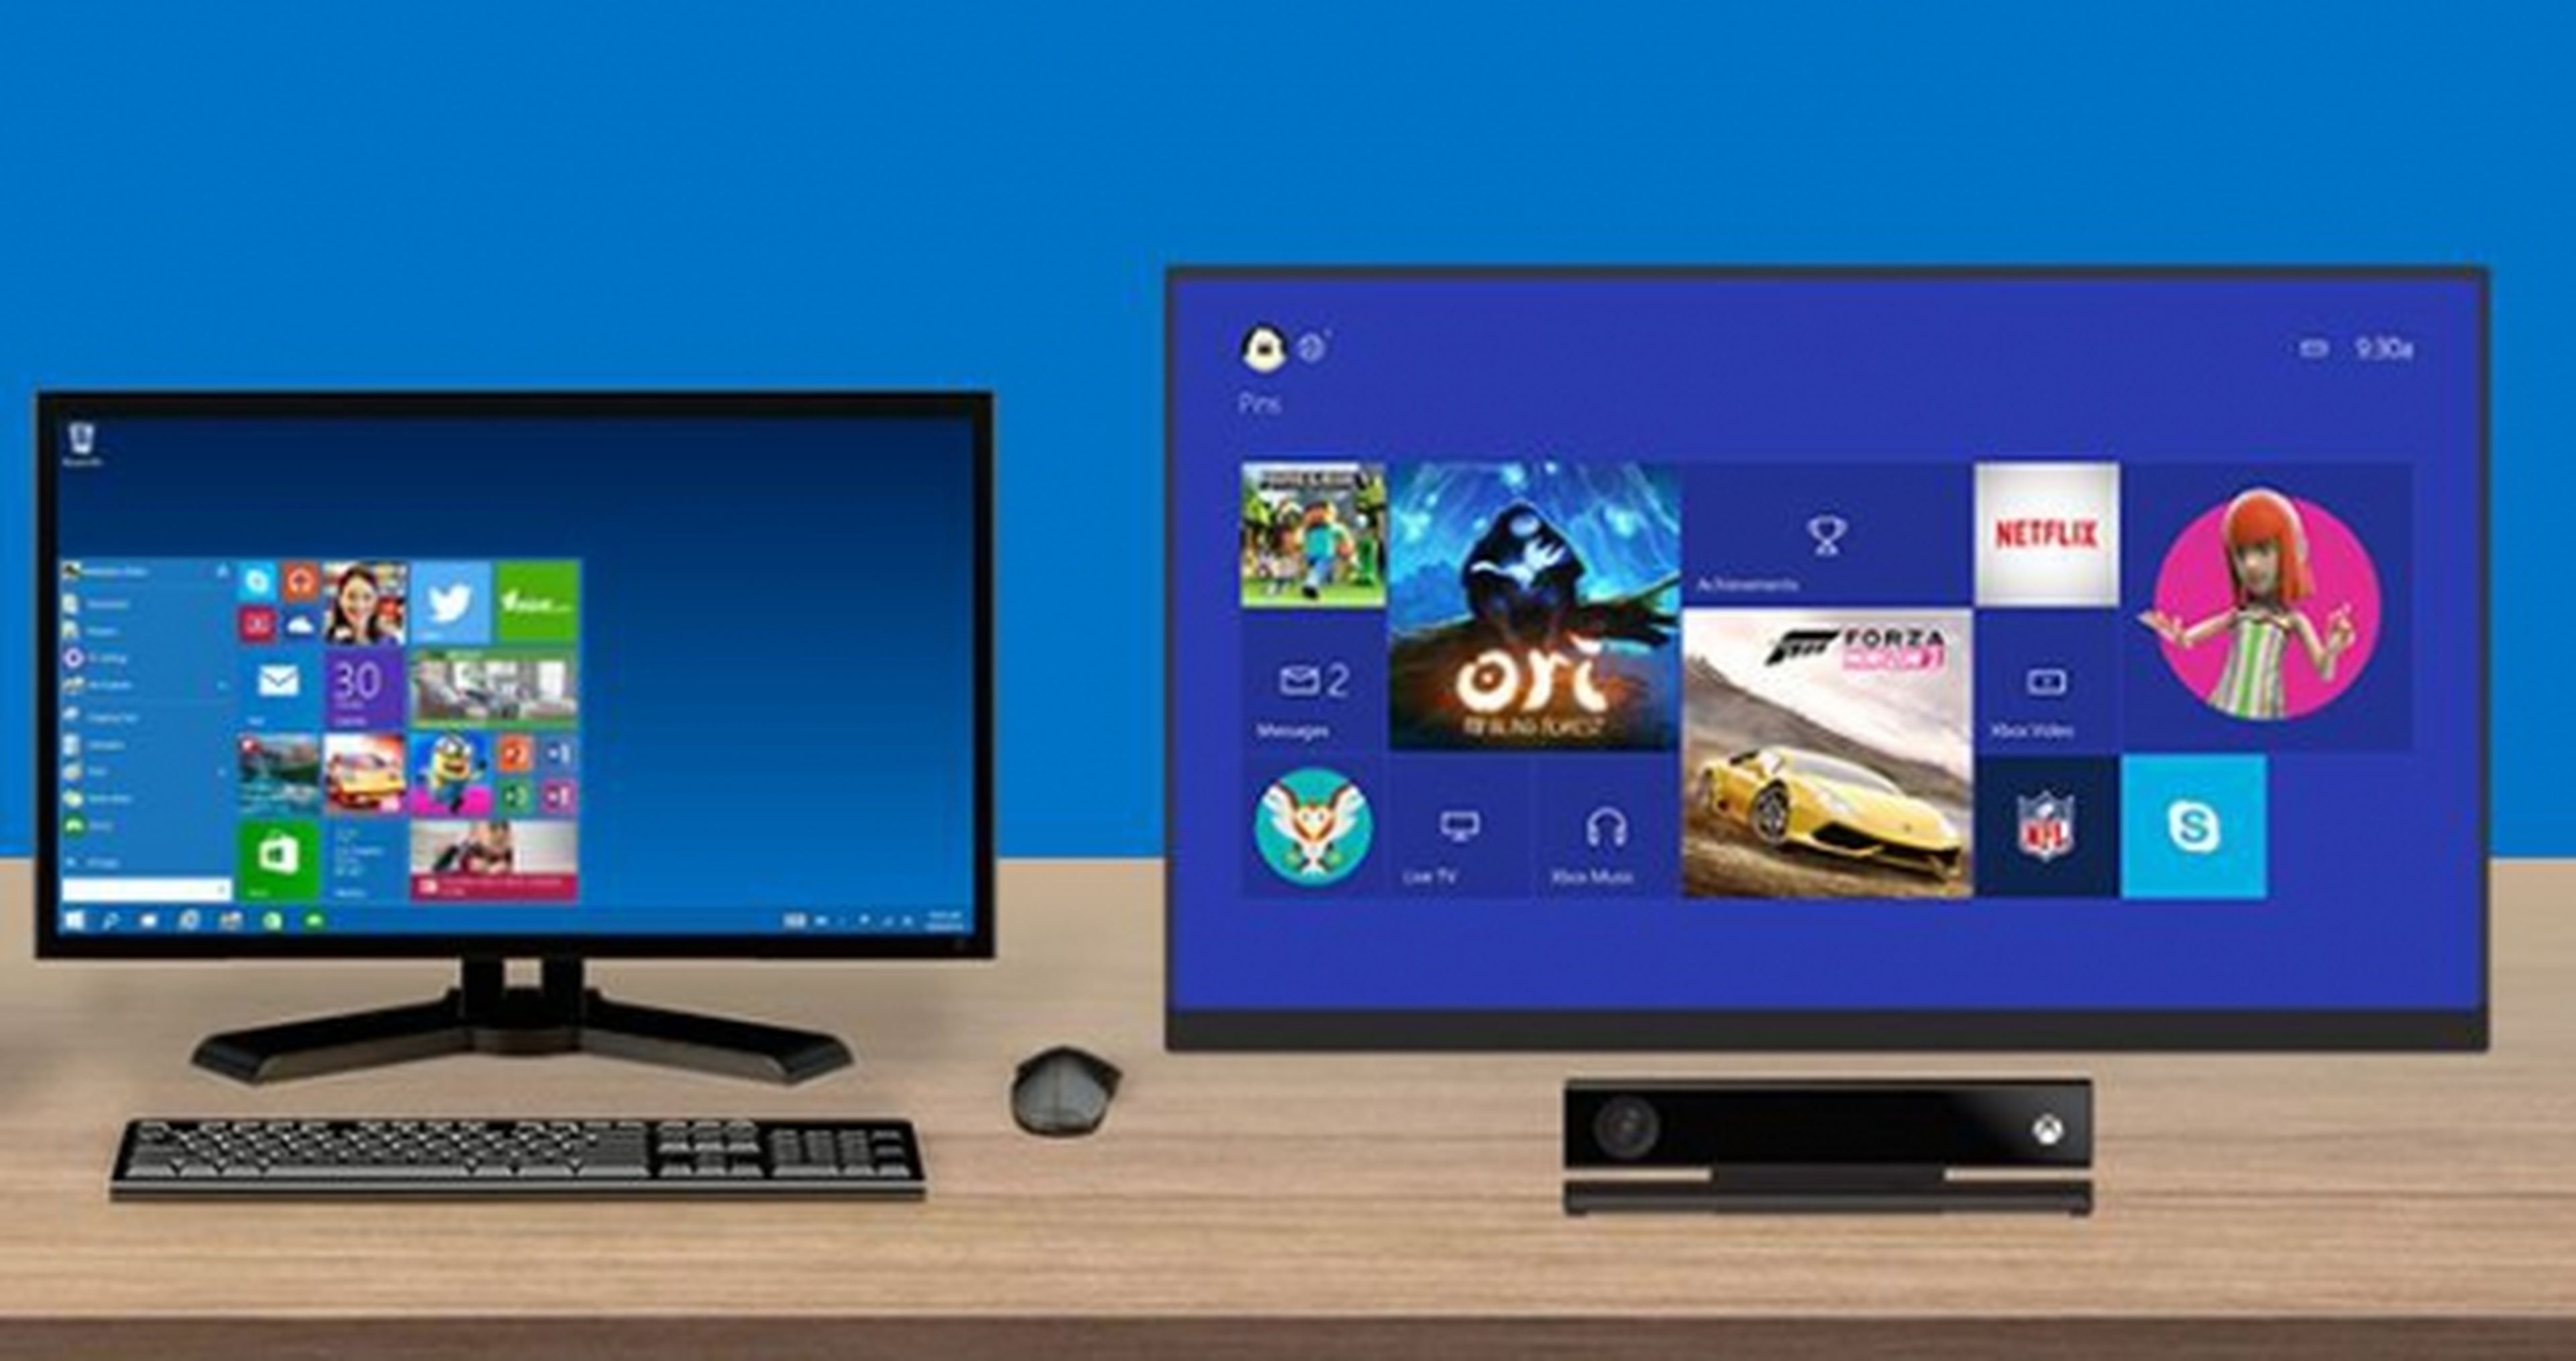 La presentación de Windows 10 será "muy interesante" para los usuarios de Xbox One